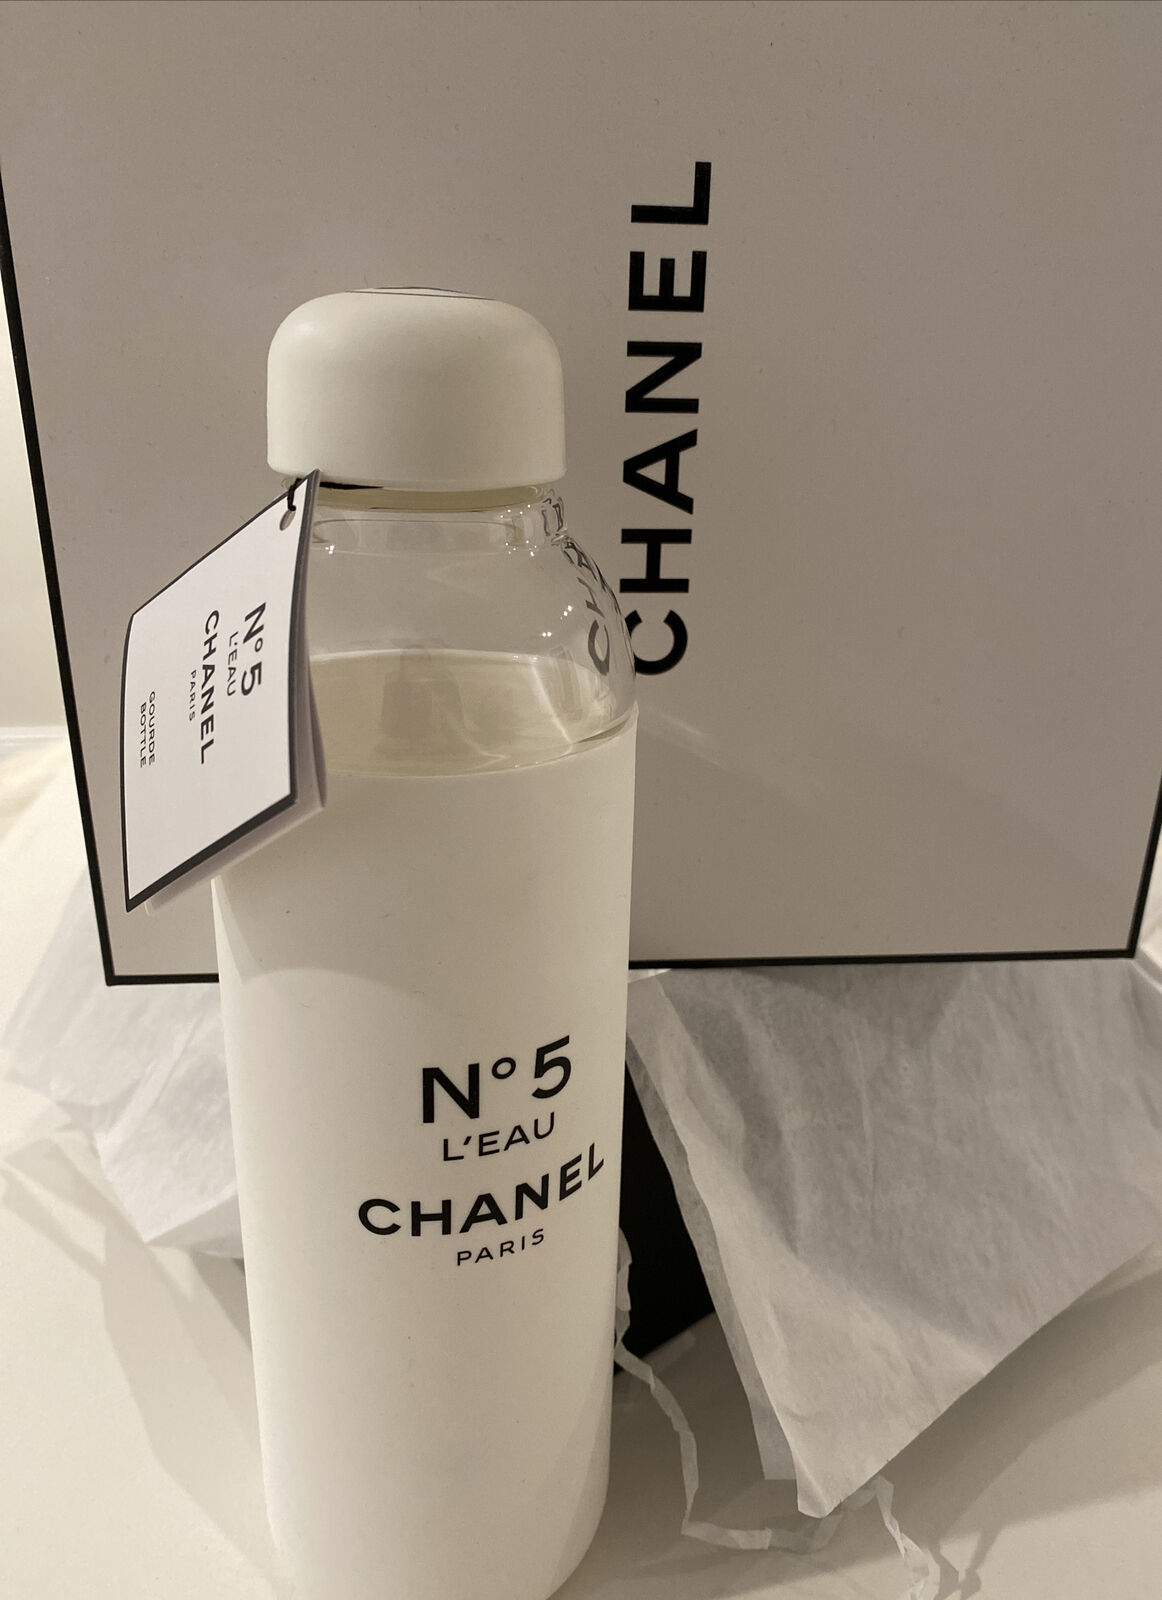 Chanel Bottle - 162 For Sale on 1stDibs